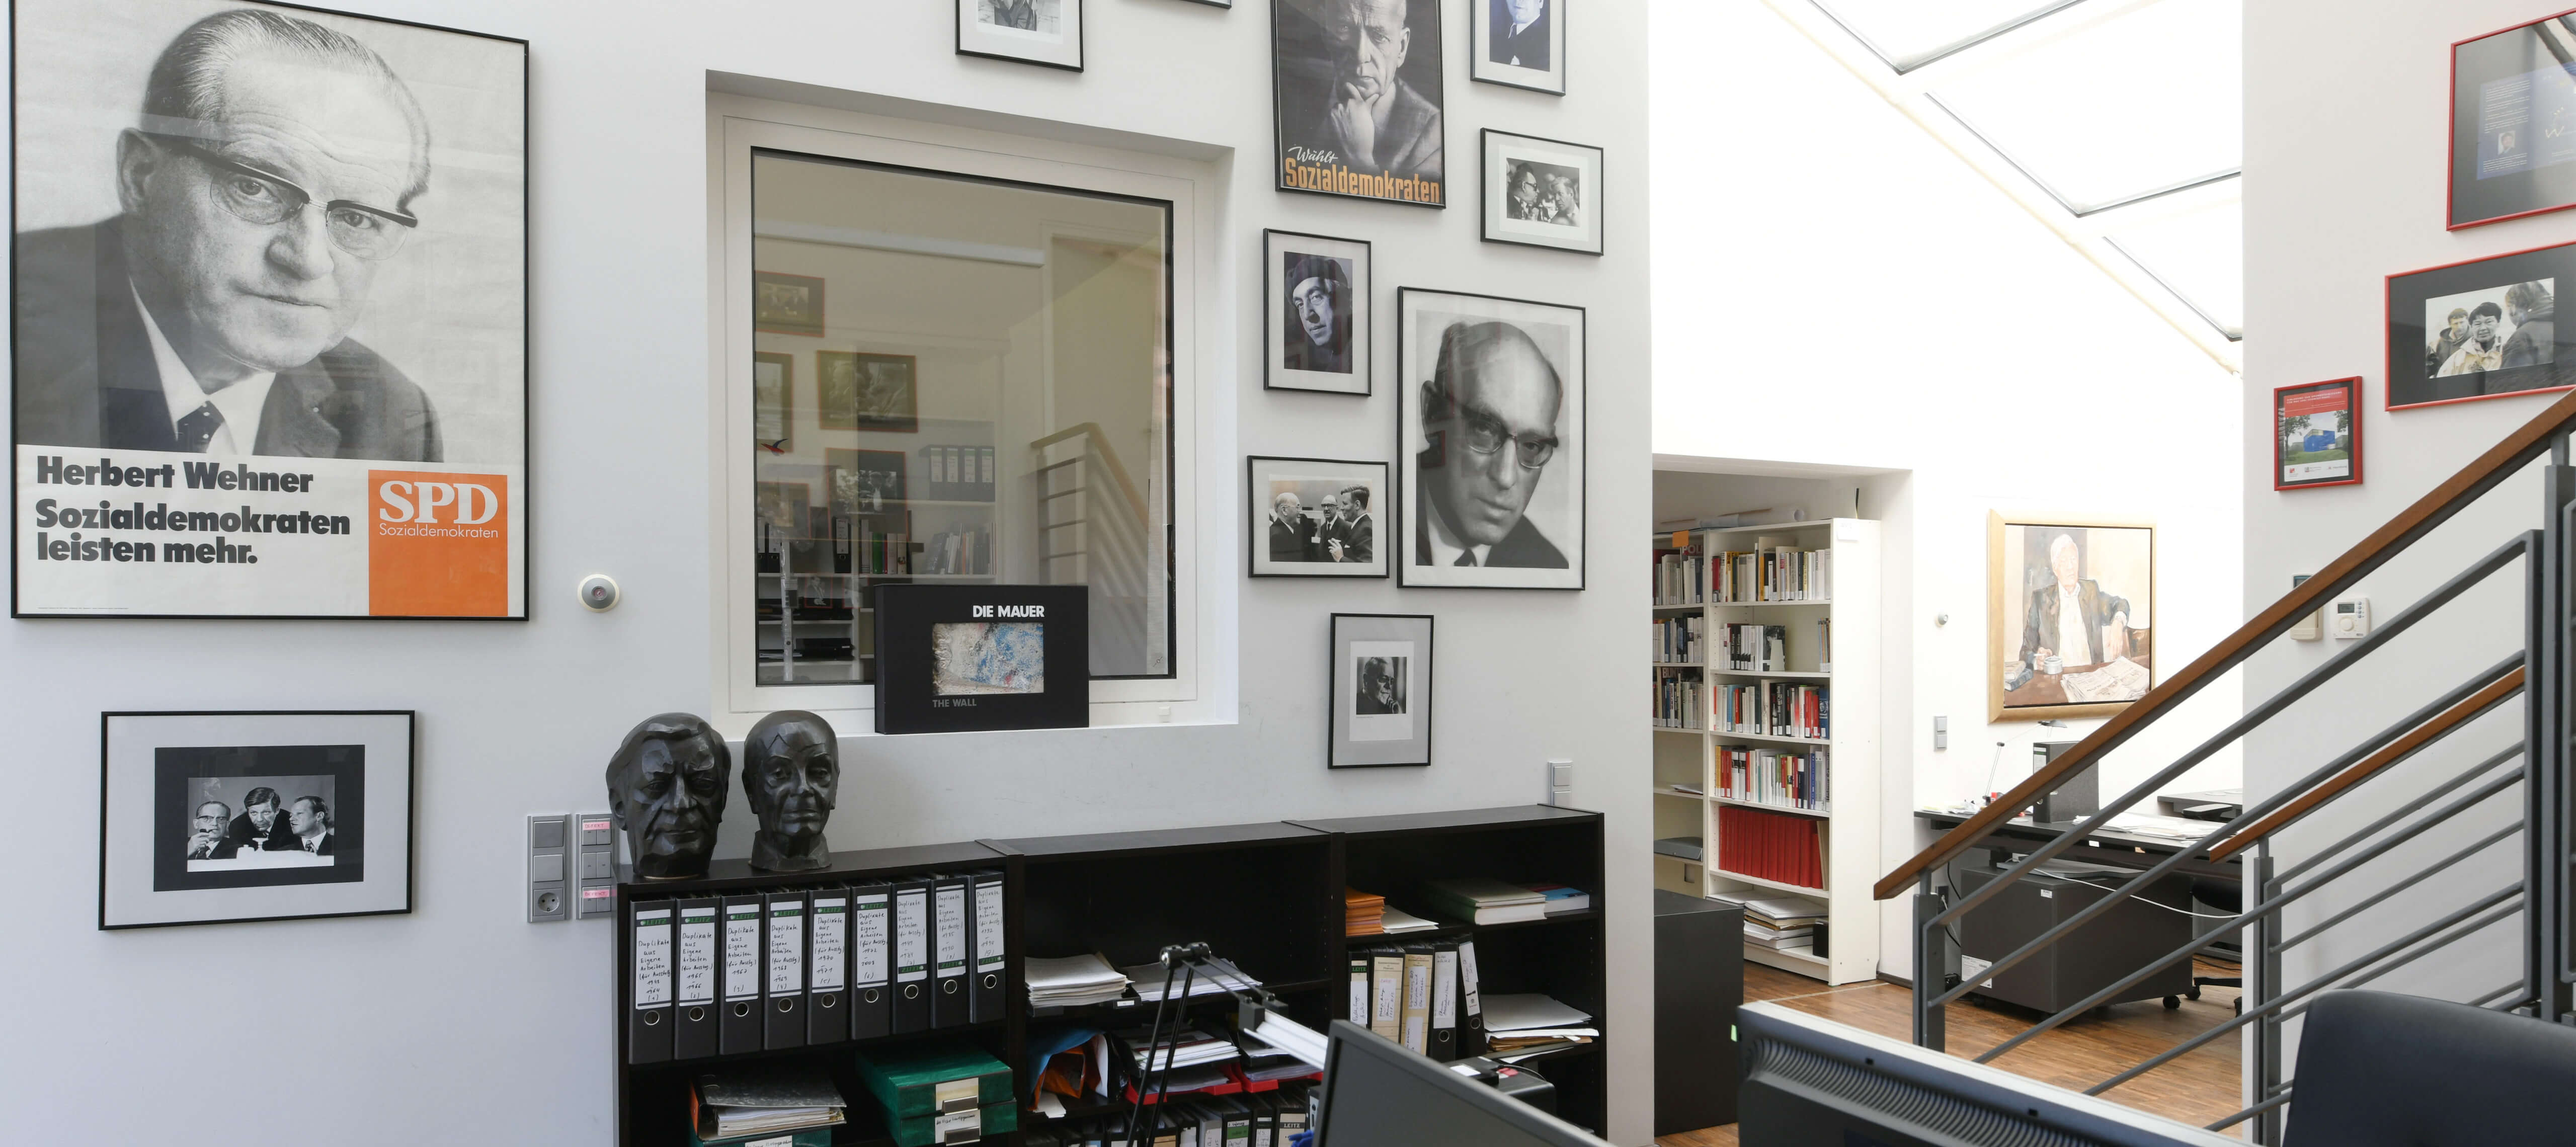 Blick in das Büro des Helmut-Schmidt-Archivs mit zahlreichen Fotos an den Wänden.